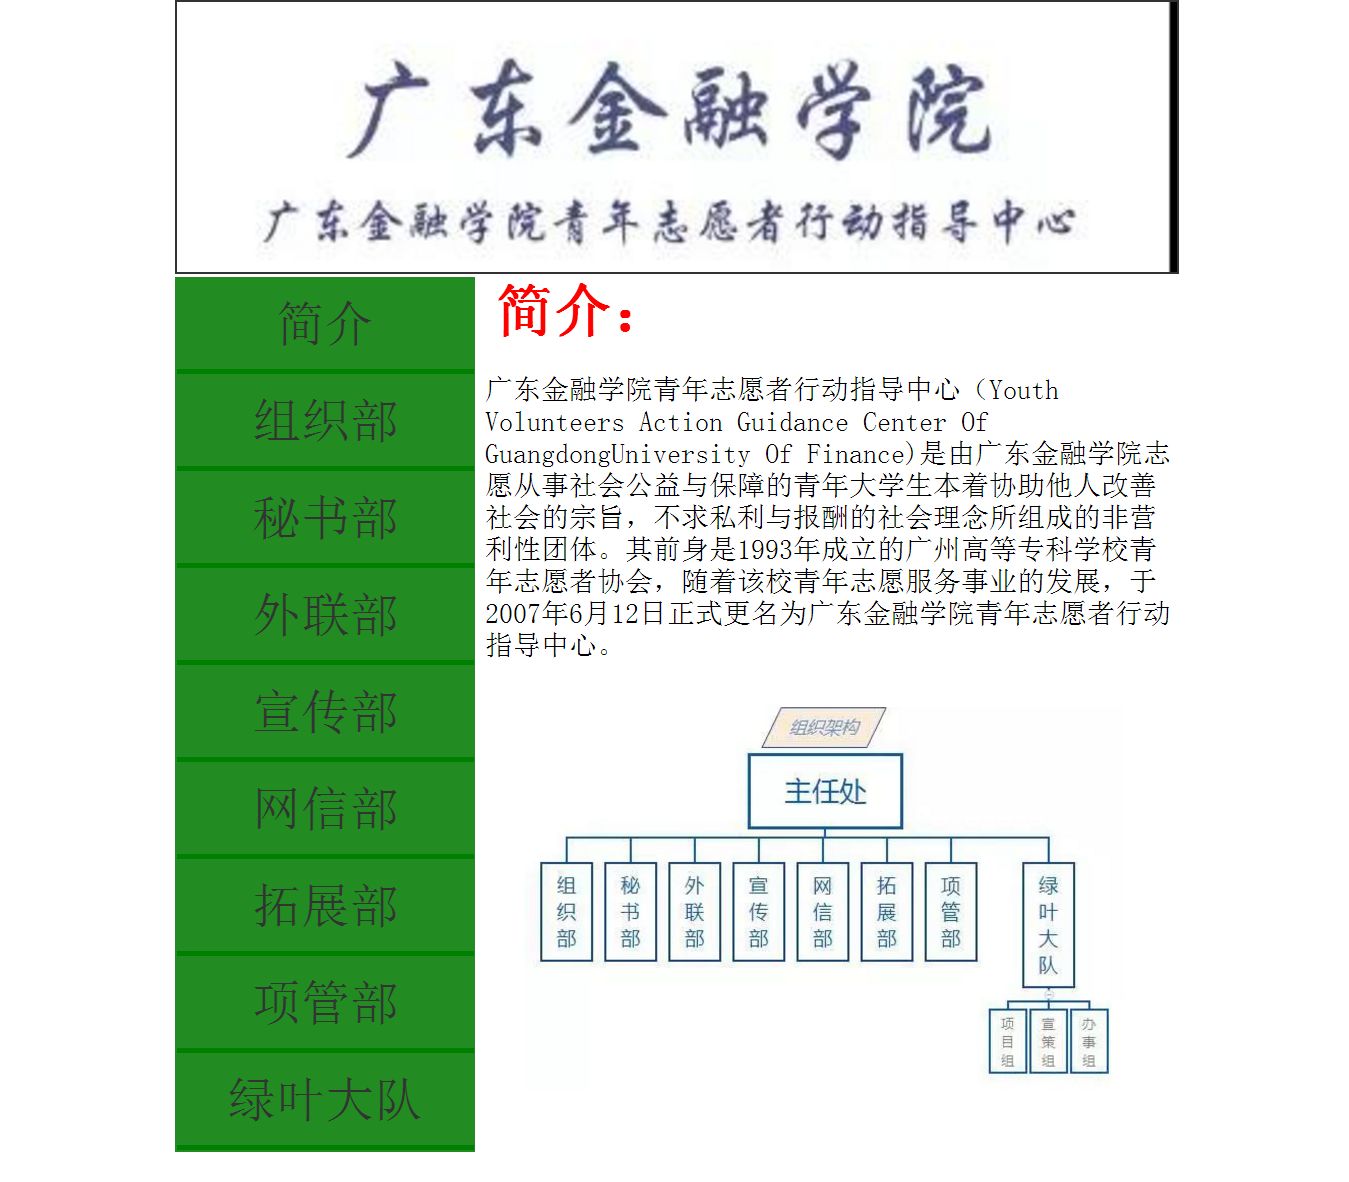 编号：417 广东金融学院青年志愿者行动指导中心 9页 css布局